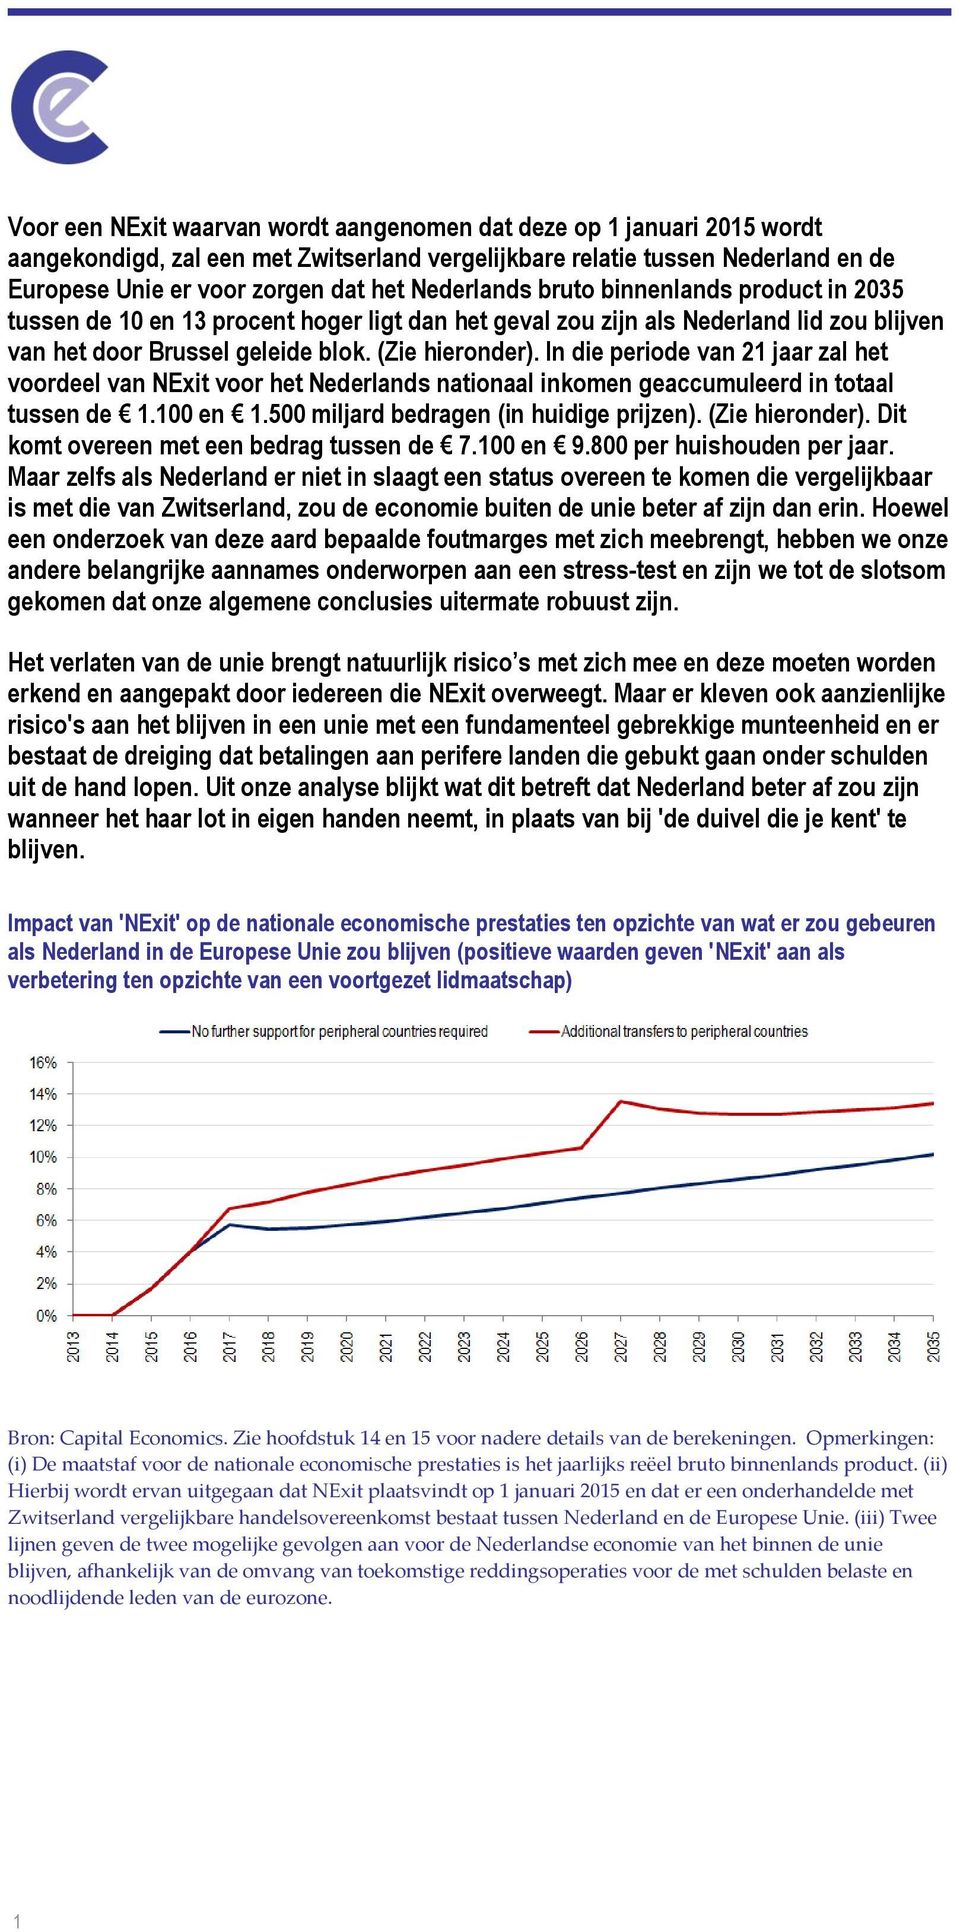 In die periode van 21 jaar zal het voordeel van NExit voor het Nederlands nationaal inkomen geaccumuleerd in totaal tussen de 1.100 en 1.500 miljard bedragen (in huidige prijzen). (Zie hieronder).